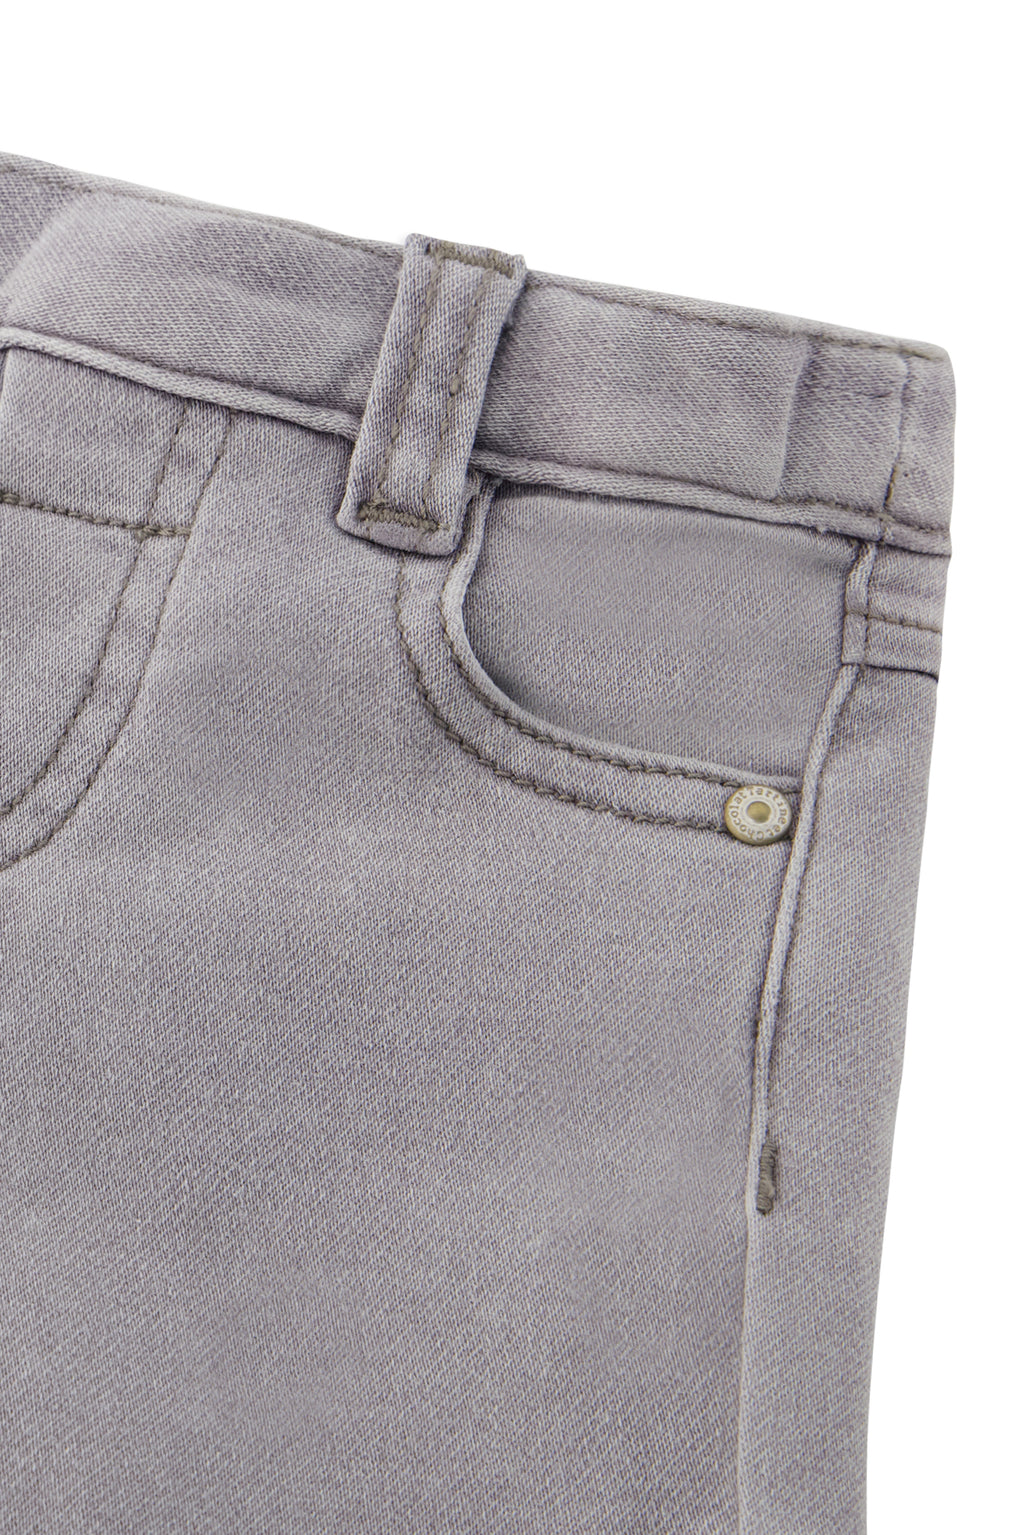 Jeans - Grigio chiaro misto